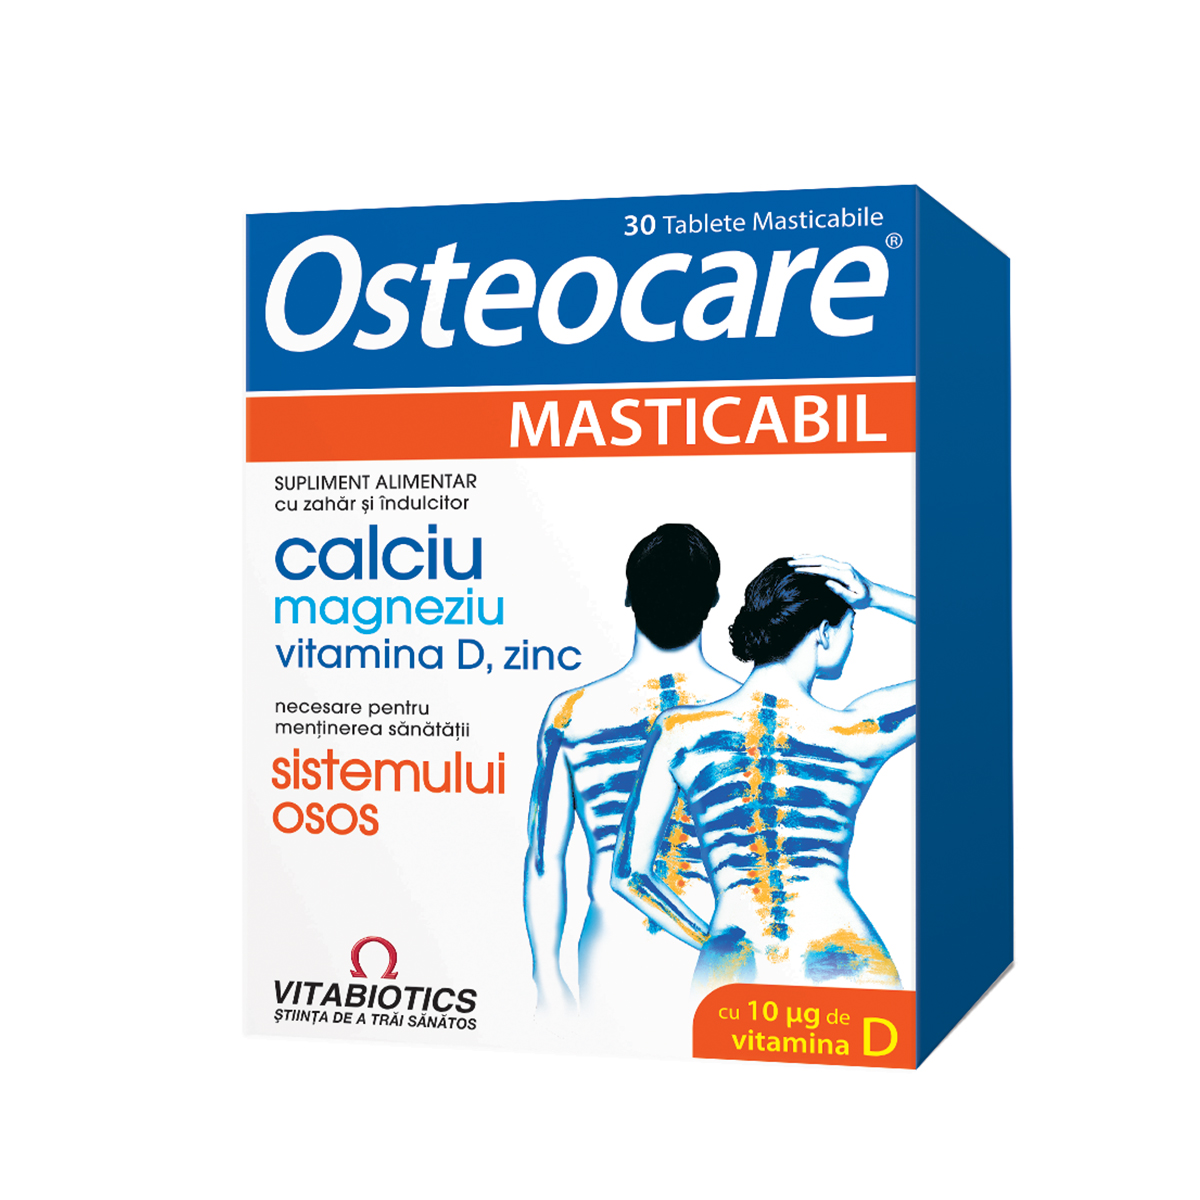 Uz general - Osteocare masticabil (Ca+Mg+Zn+D3), 30 comprimate, Vitabiotics, sinapis.ro